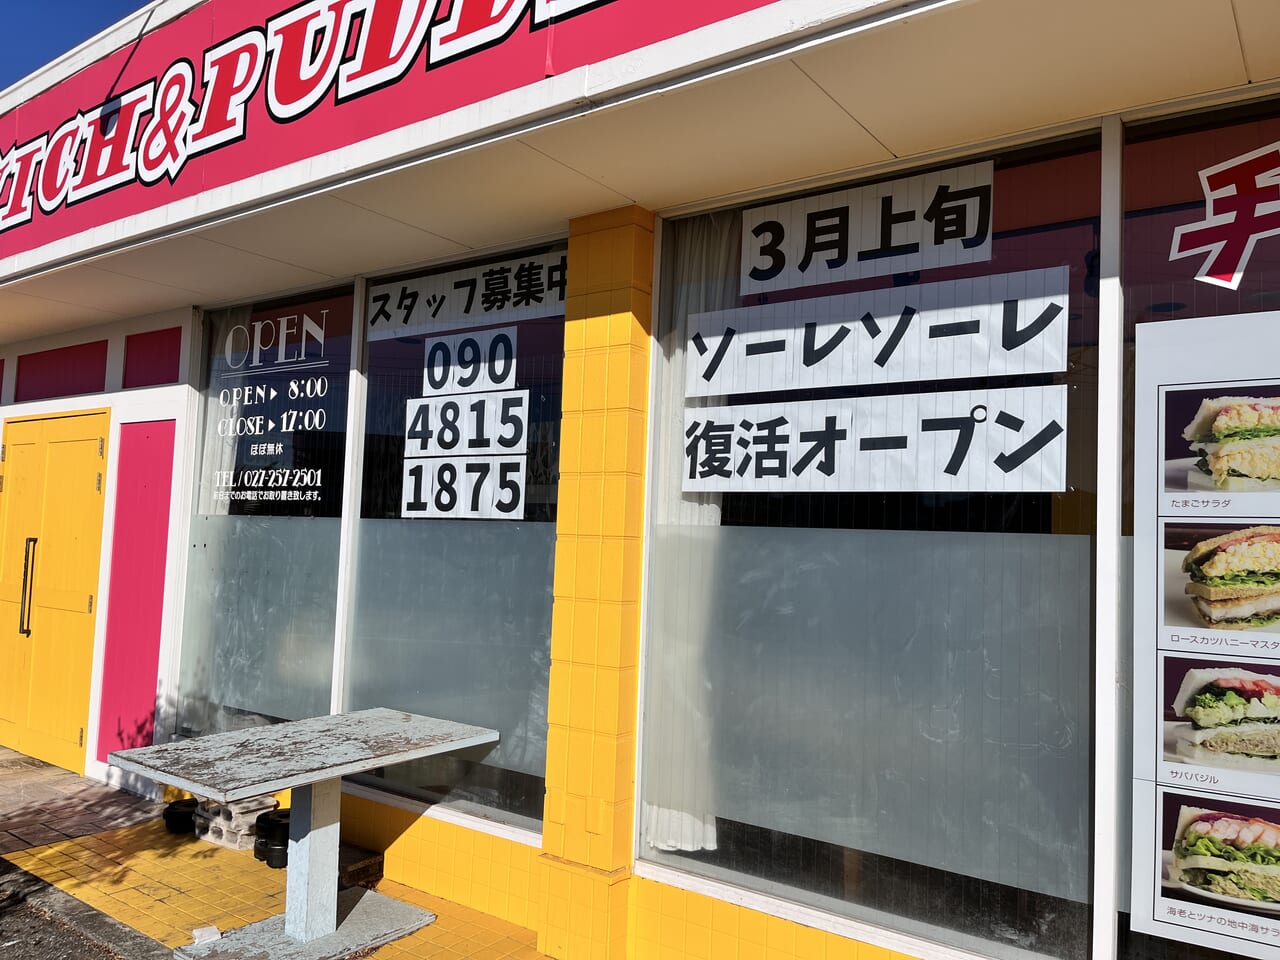 「サンドイッチとプリンのお店TOMOJI前橋店」跡地の店頭の掲示の様子